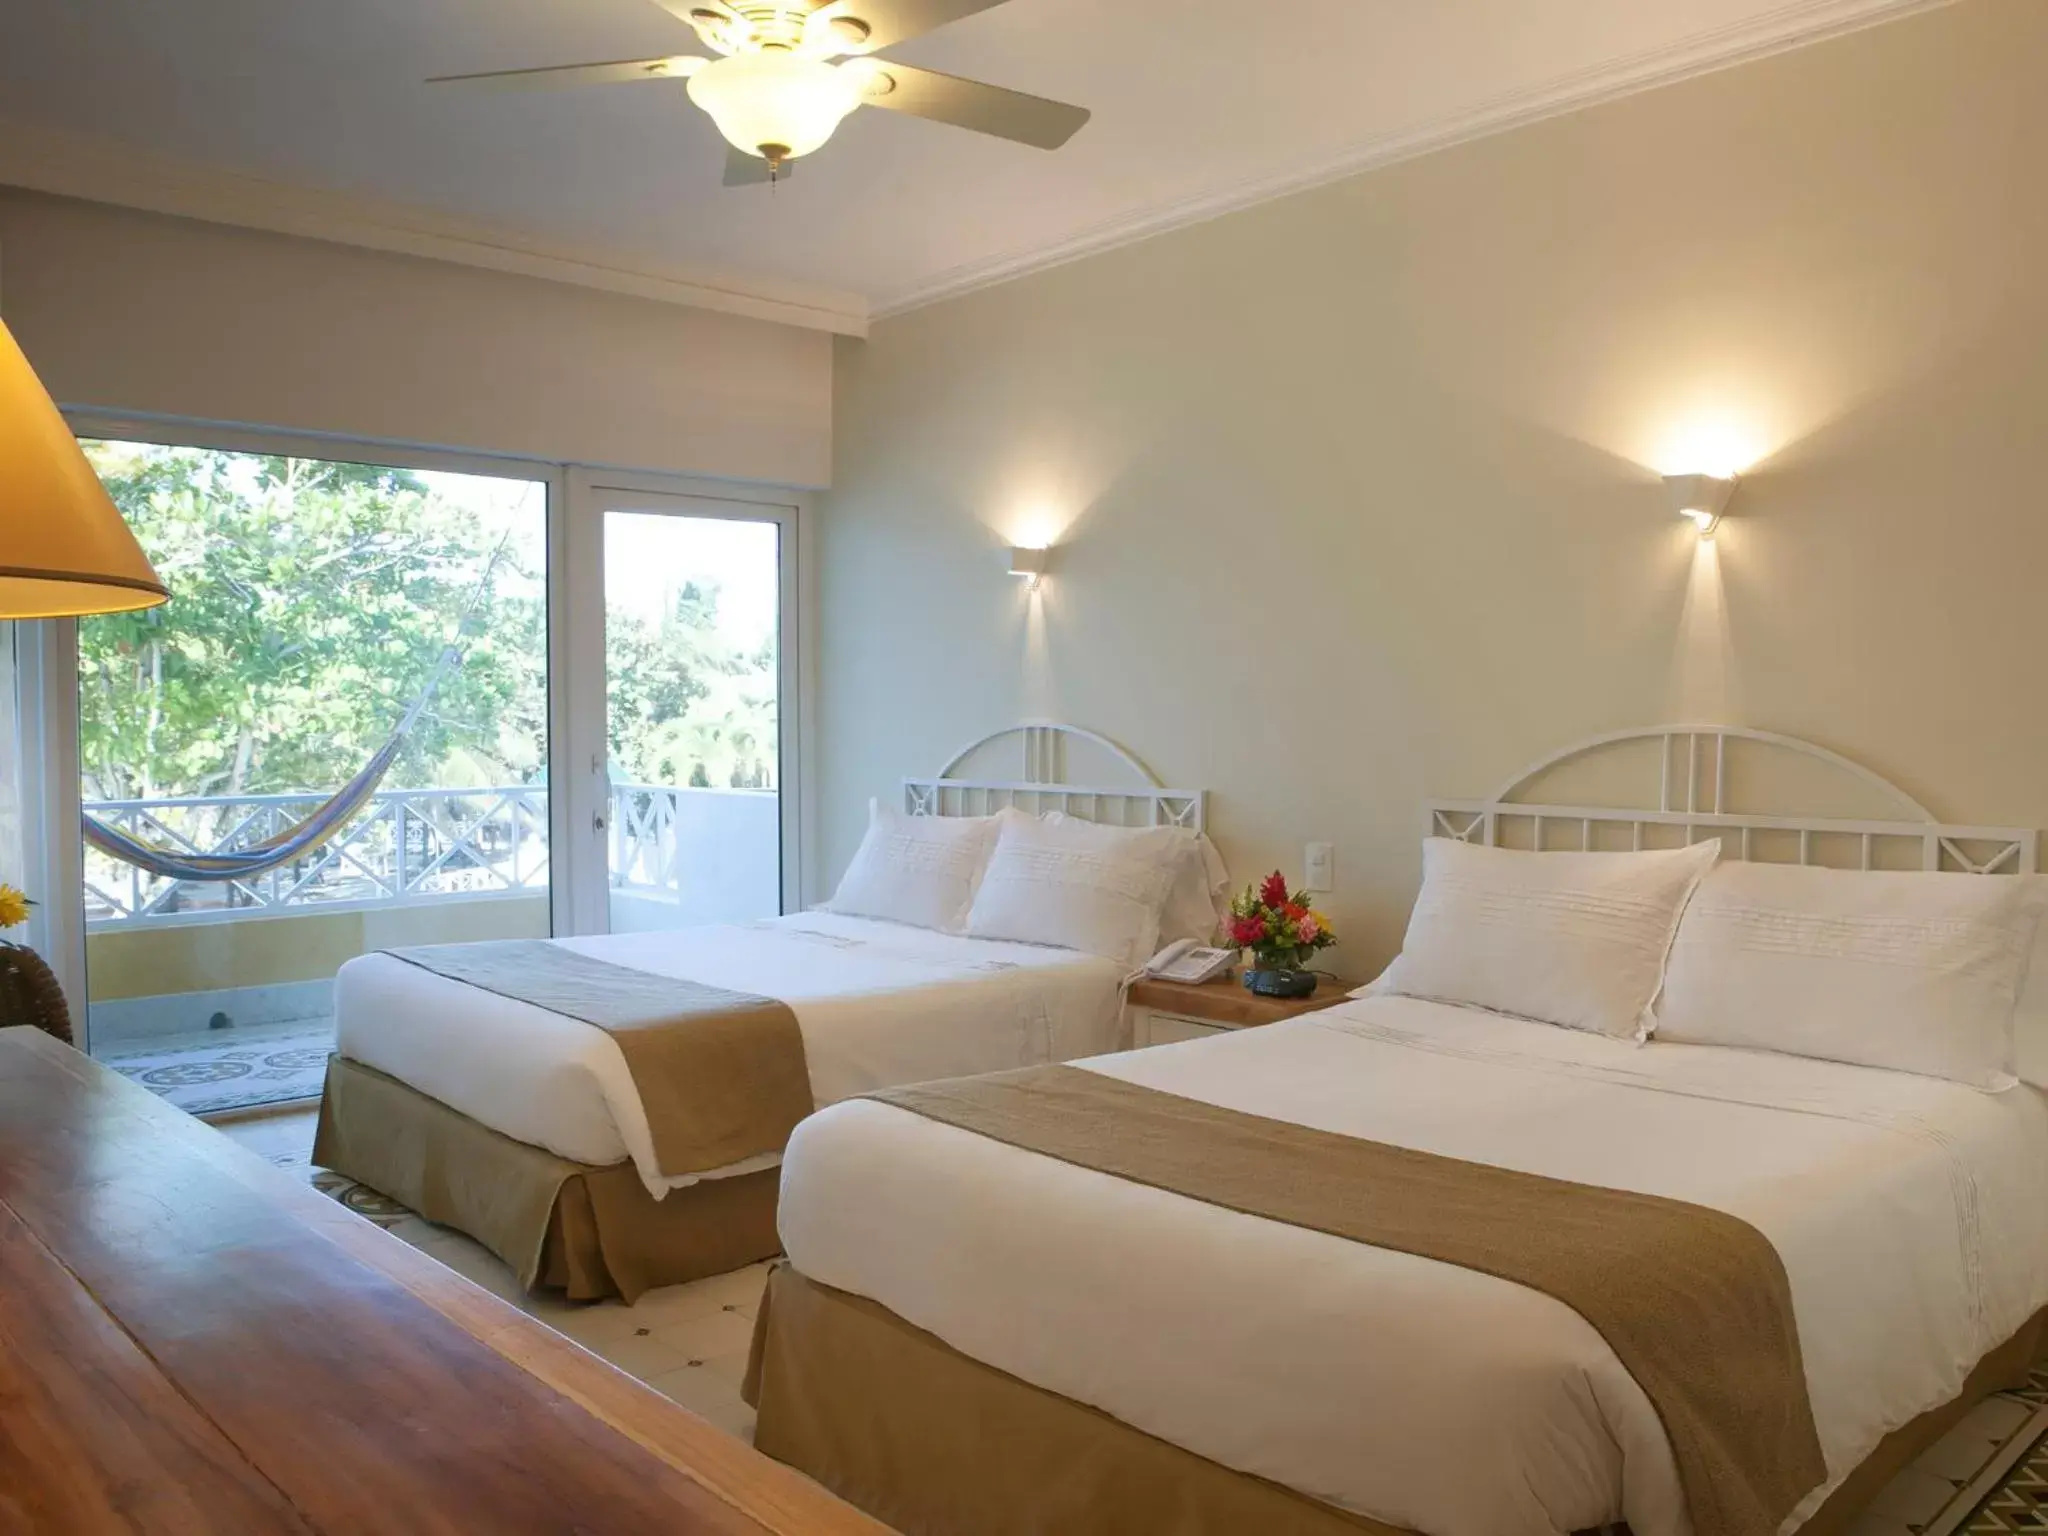 Bed, Room Photo in Hotel Las Americas Casa de Playa